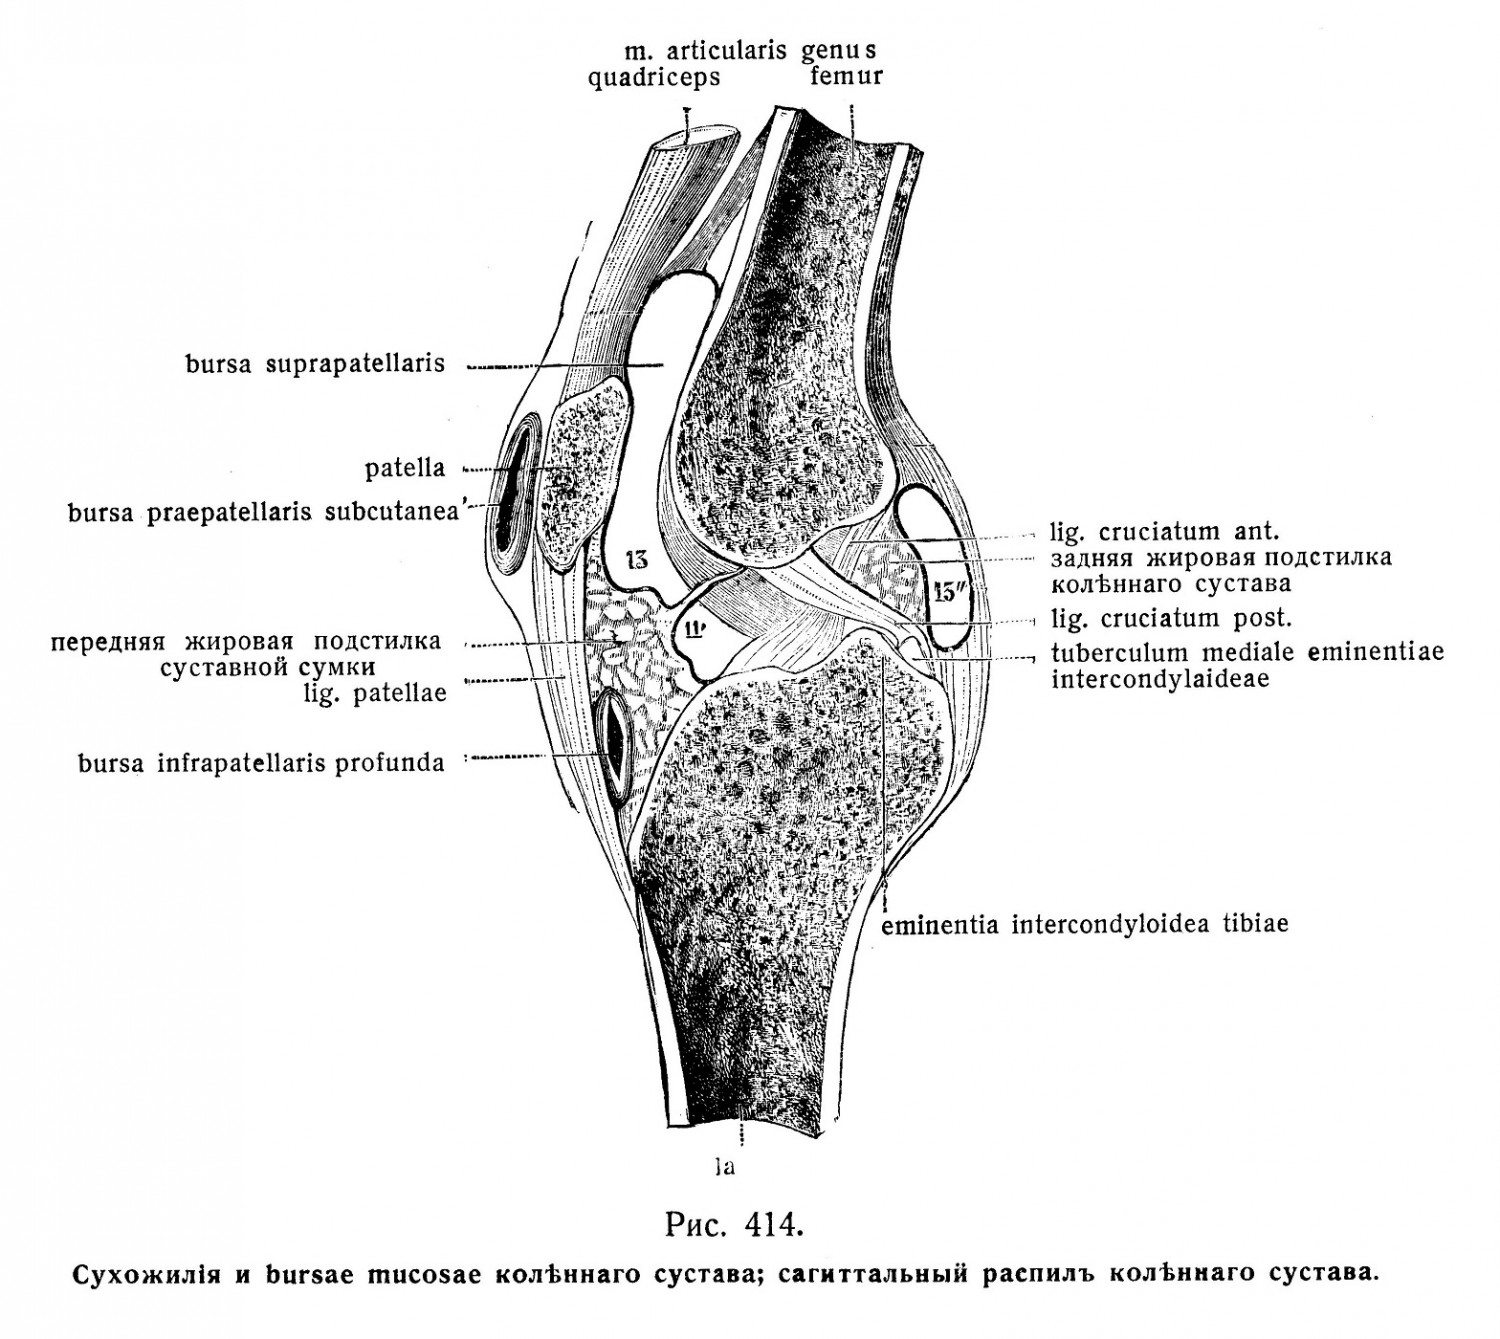 Сухожилия коленного сустава Bursa muscosae